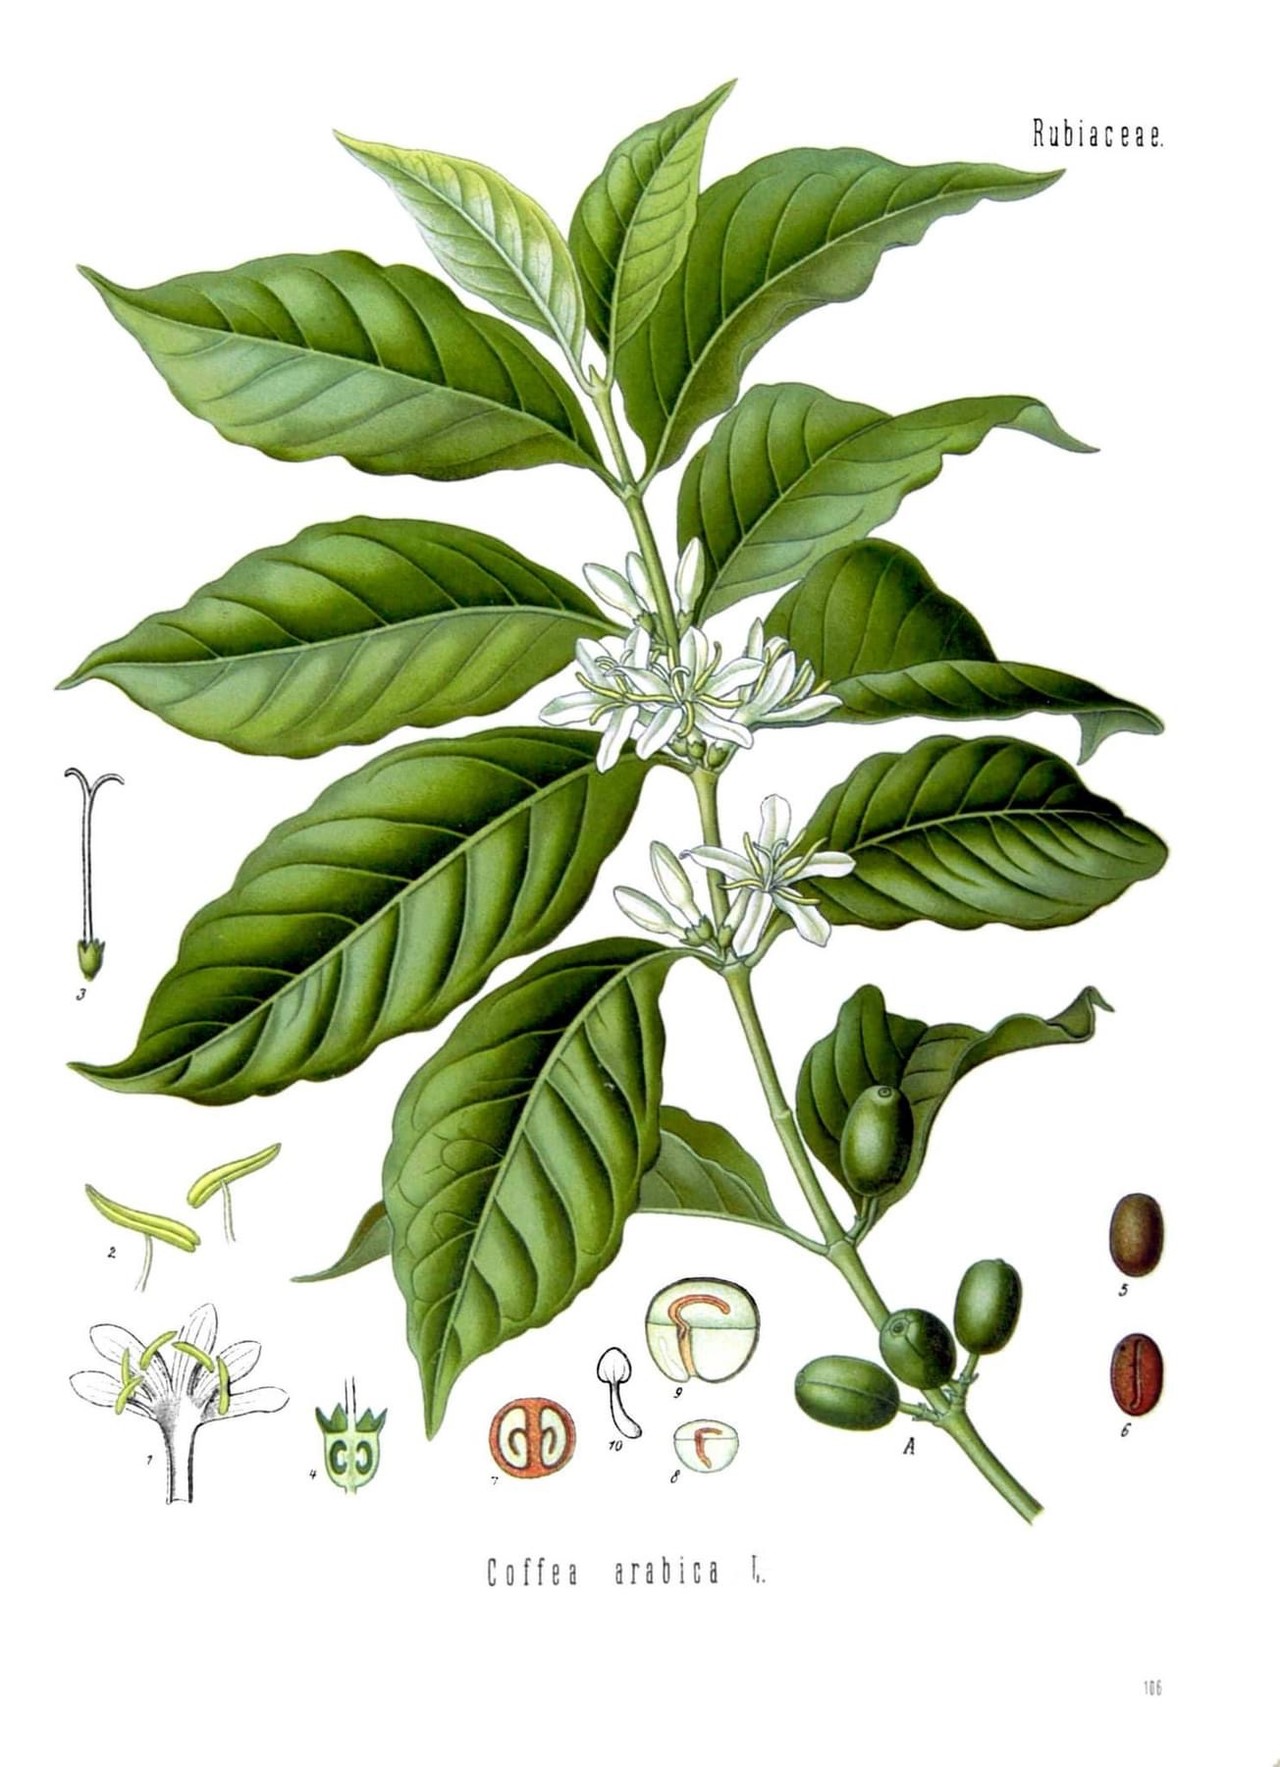 프란츠 외젠 쾰러, '아라비카 커피(Coffea arabica)', '쾰러의 약용식물', 권 2, 1890, pl. 106.